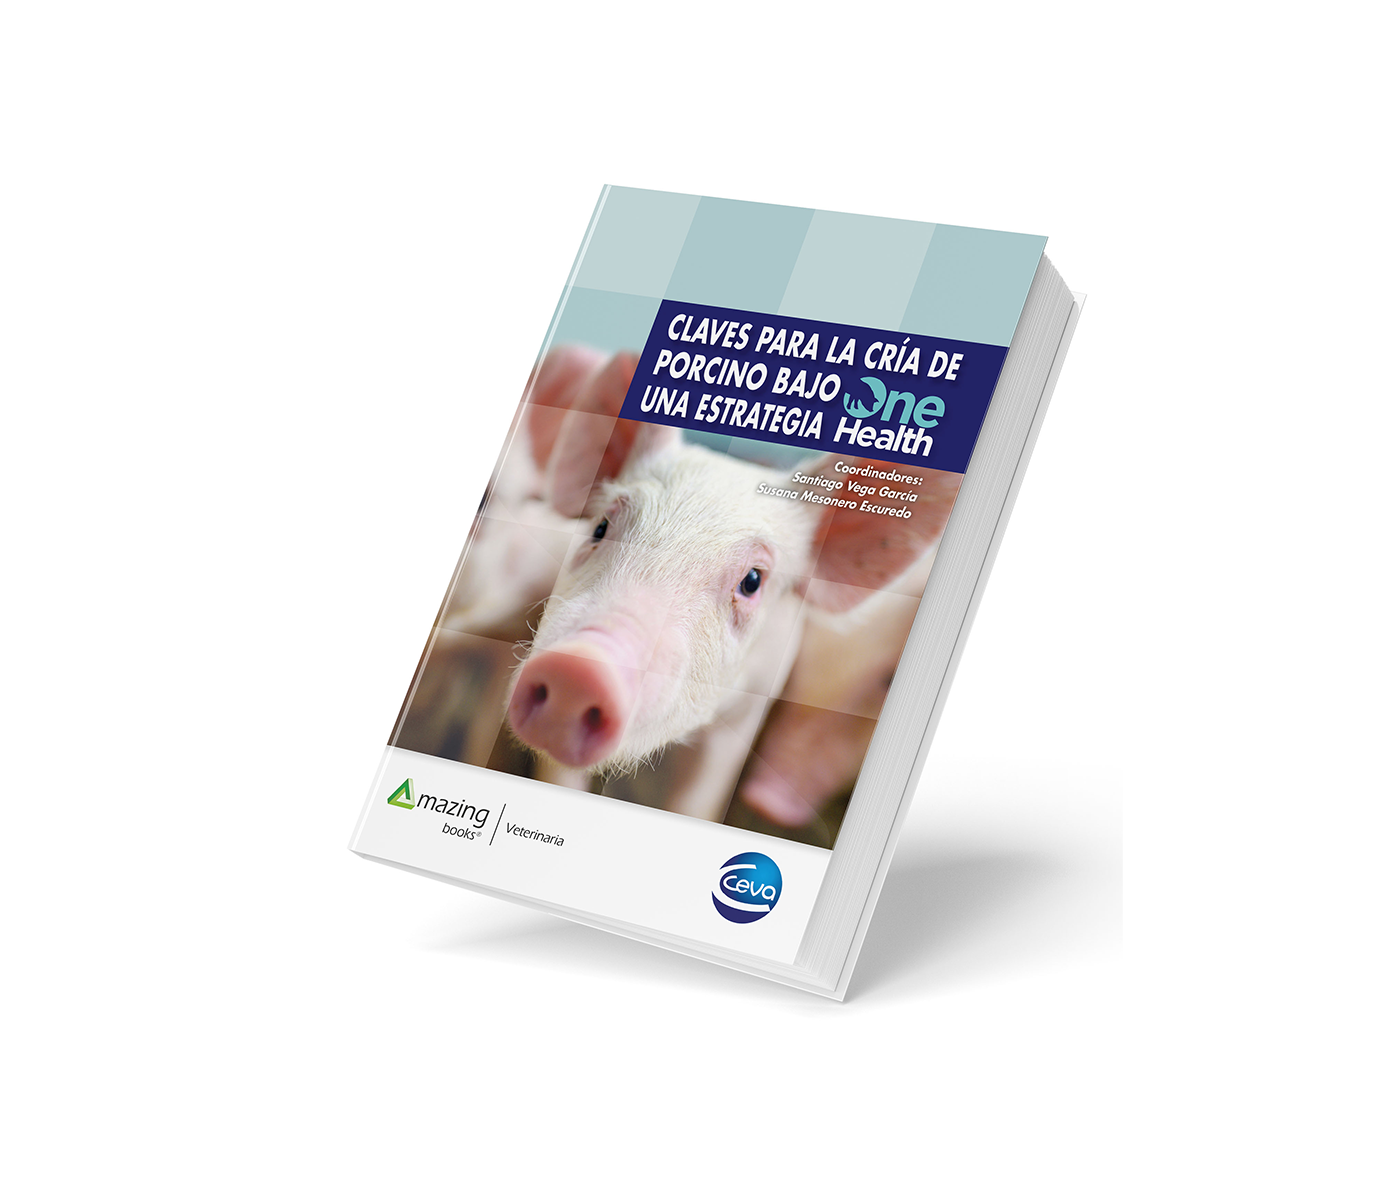 Ceva Salud Animal ofrece las Claves para la cría de porcino bajo una estrategia One Health